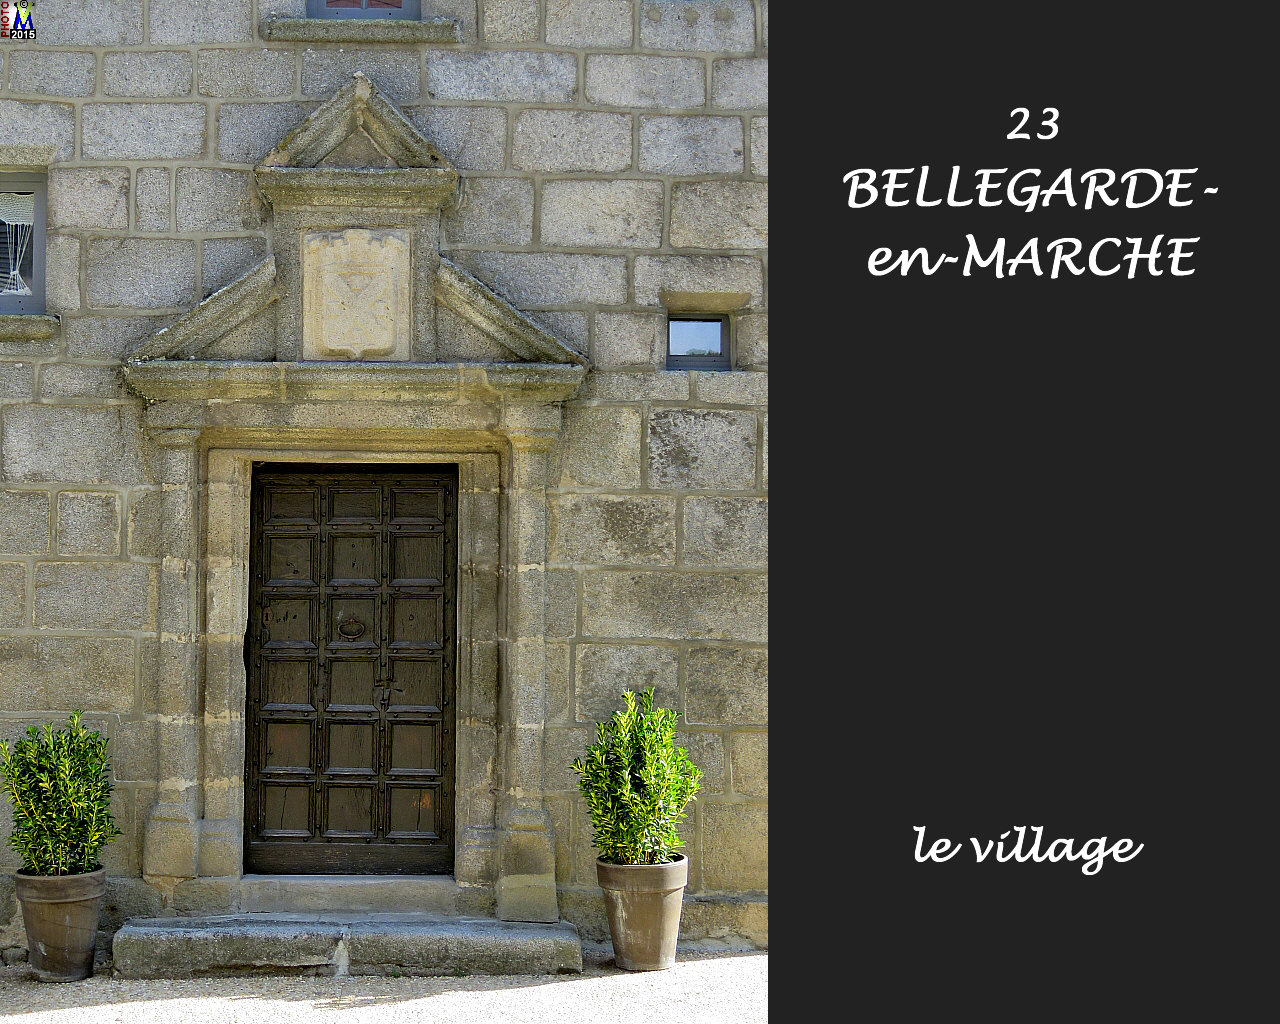 23BELLEGARDE-MARCHE_village_114.jpg